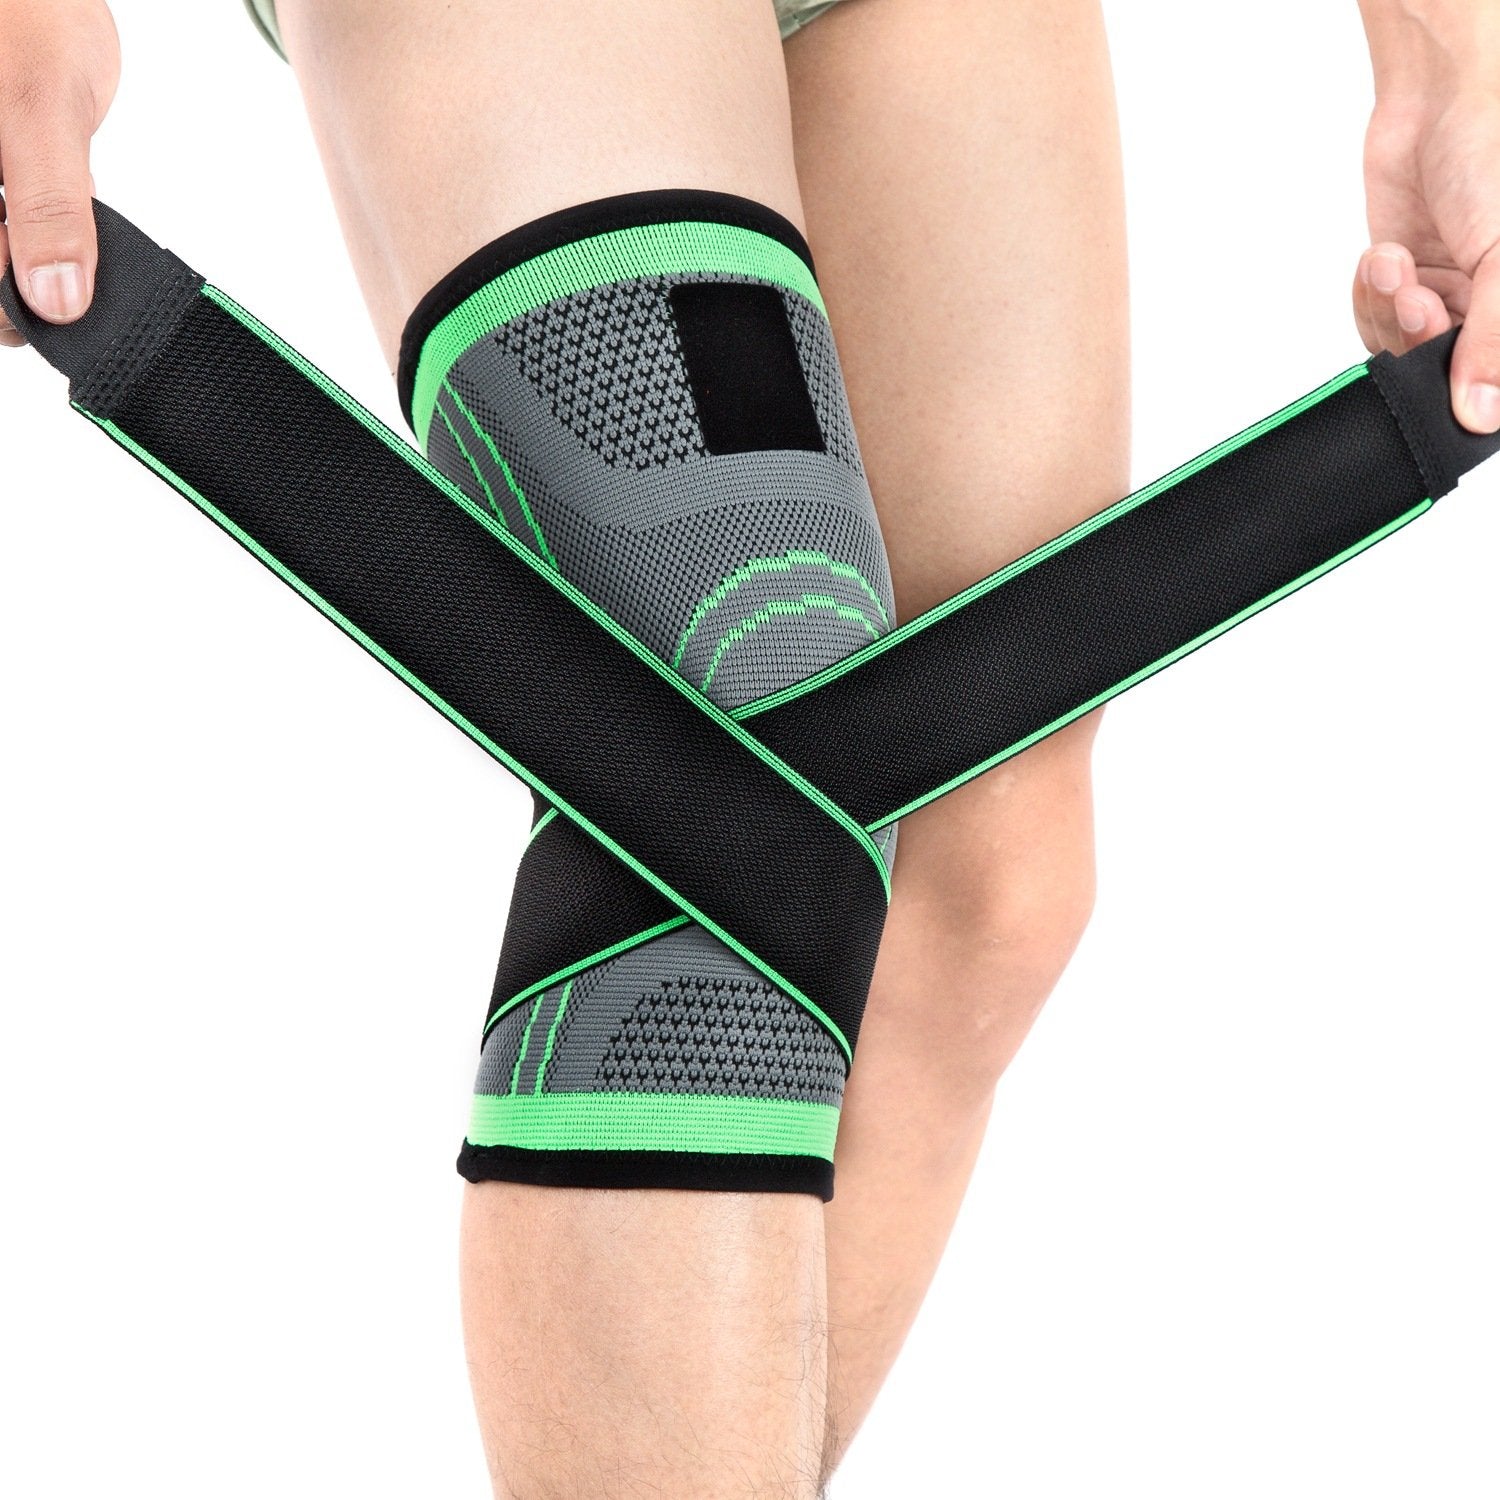 Outdoor men's and women's sports knee pads